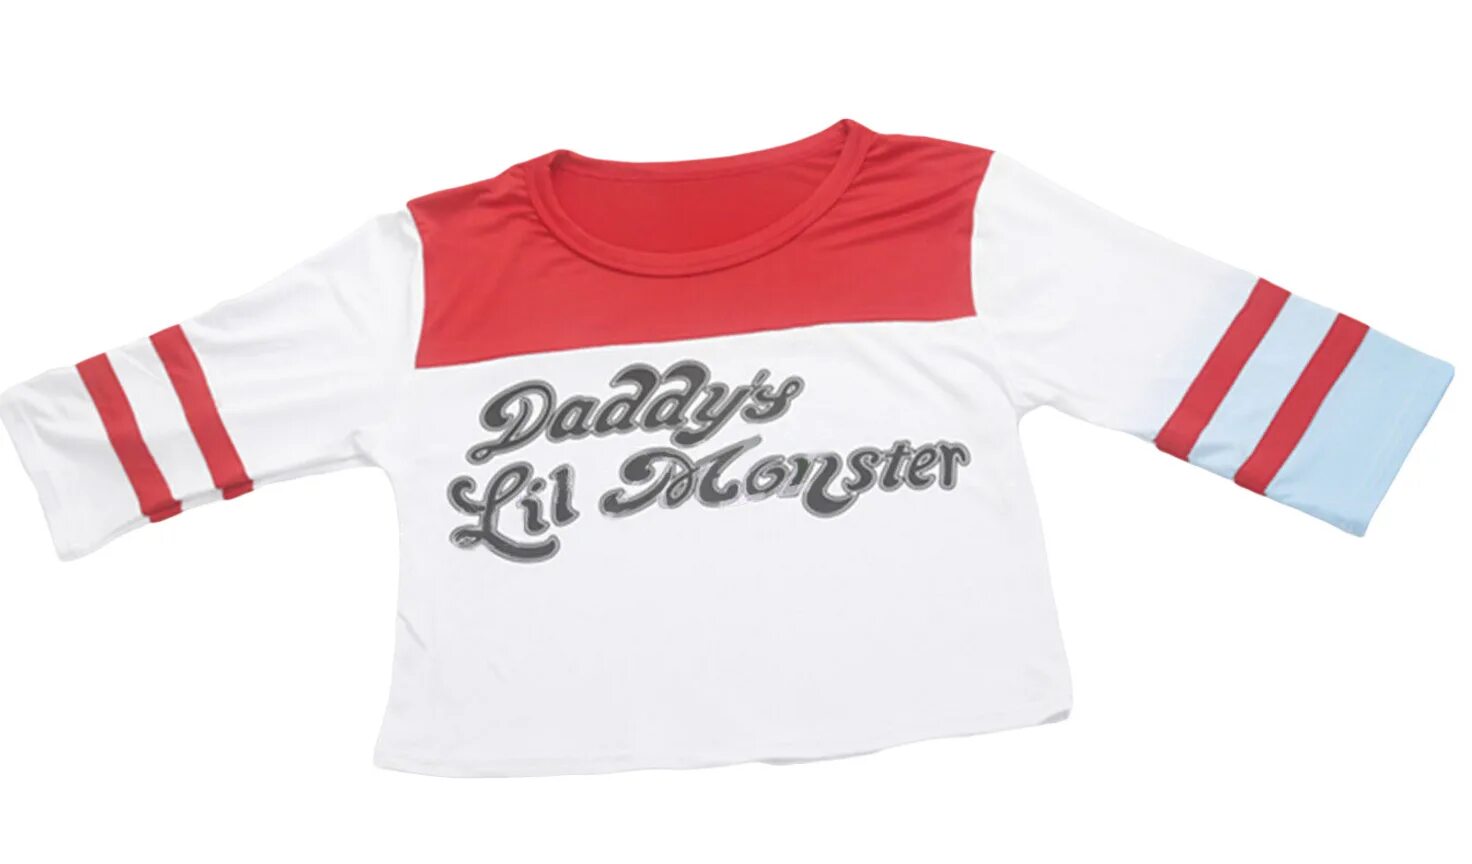 Daddy's lil. Daddy's Lil Monster футболка. Футболка Харли Квин Daddy’s Lil Monster. Футболка Харли Квинн Daddy Lil Monster. Футболка с Харли Квинн детская.